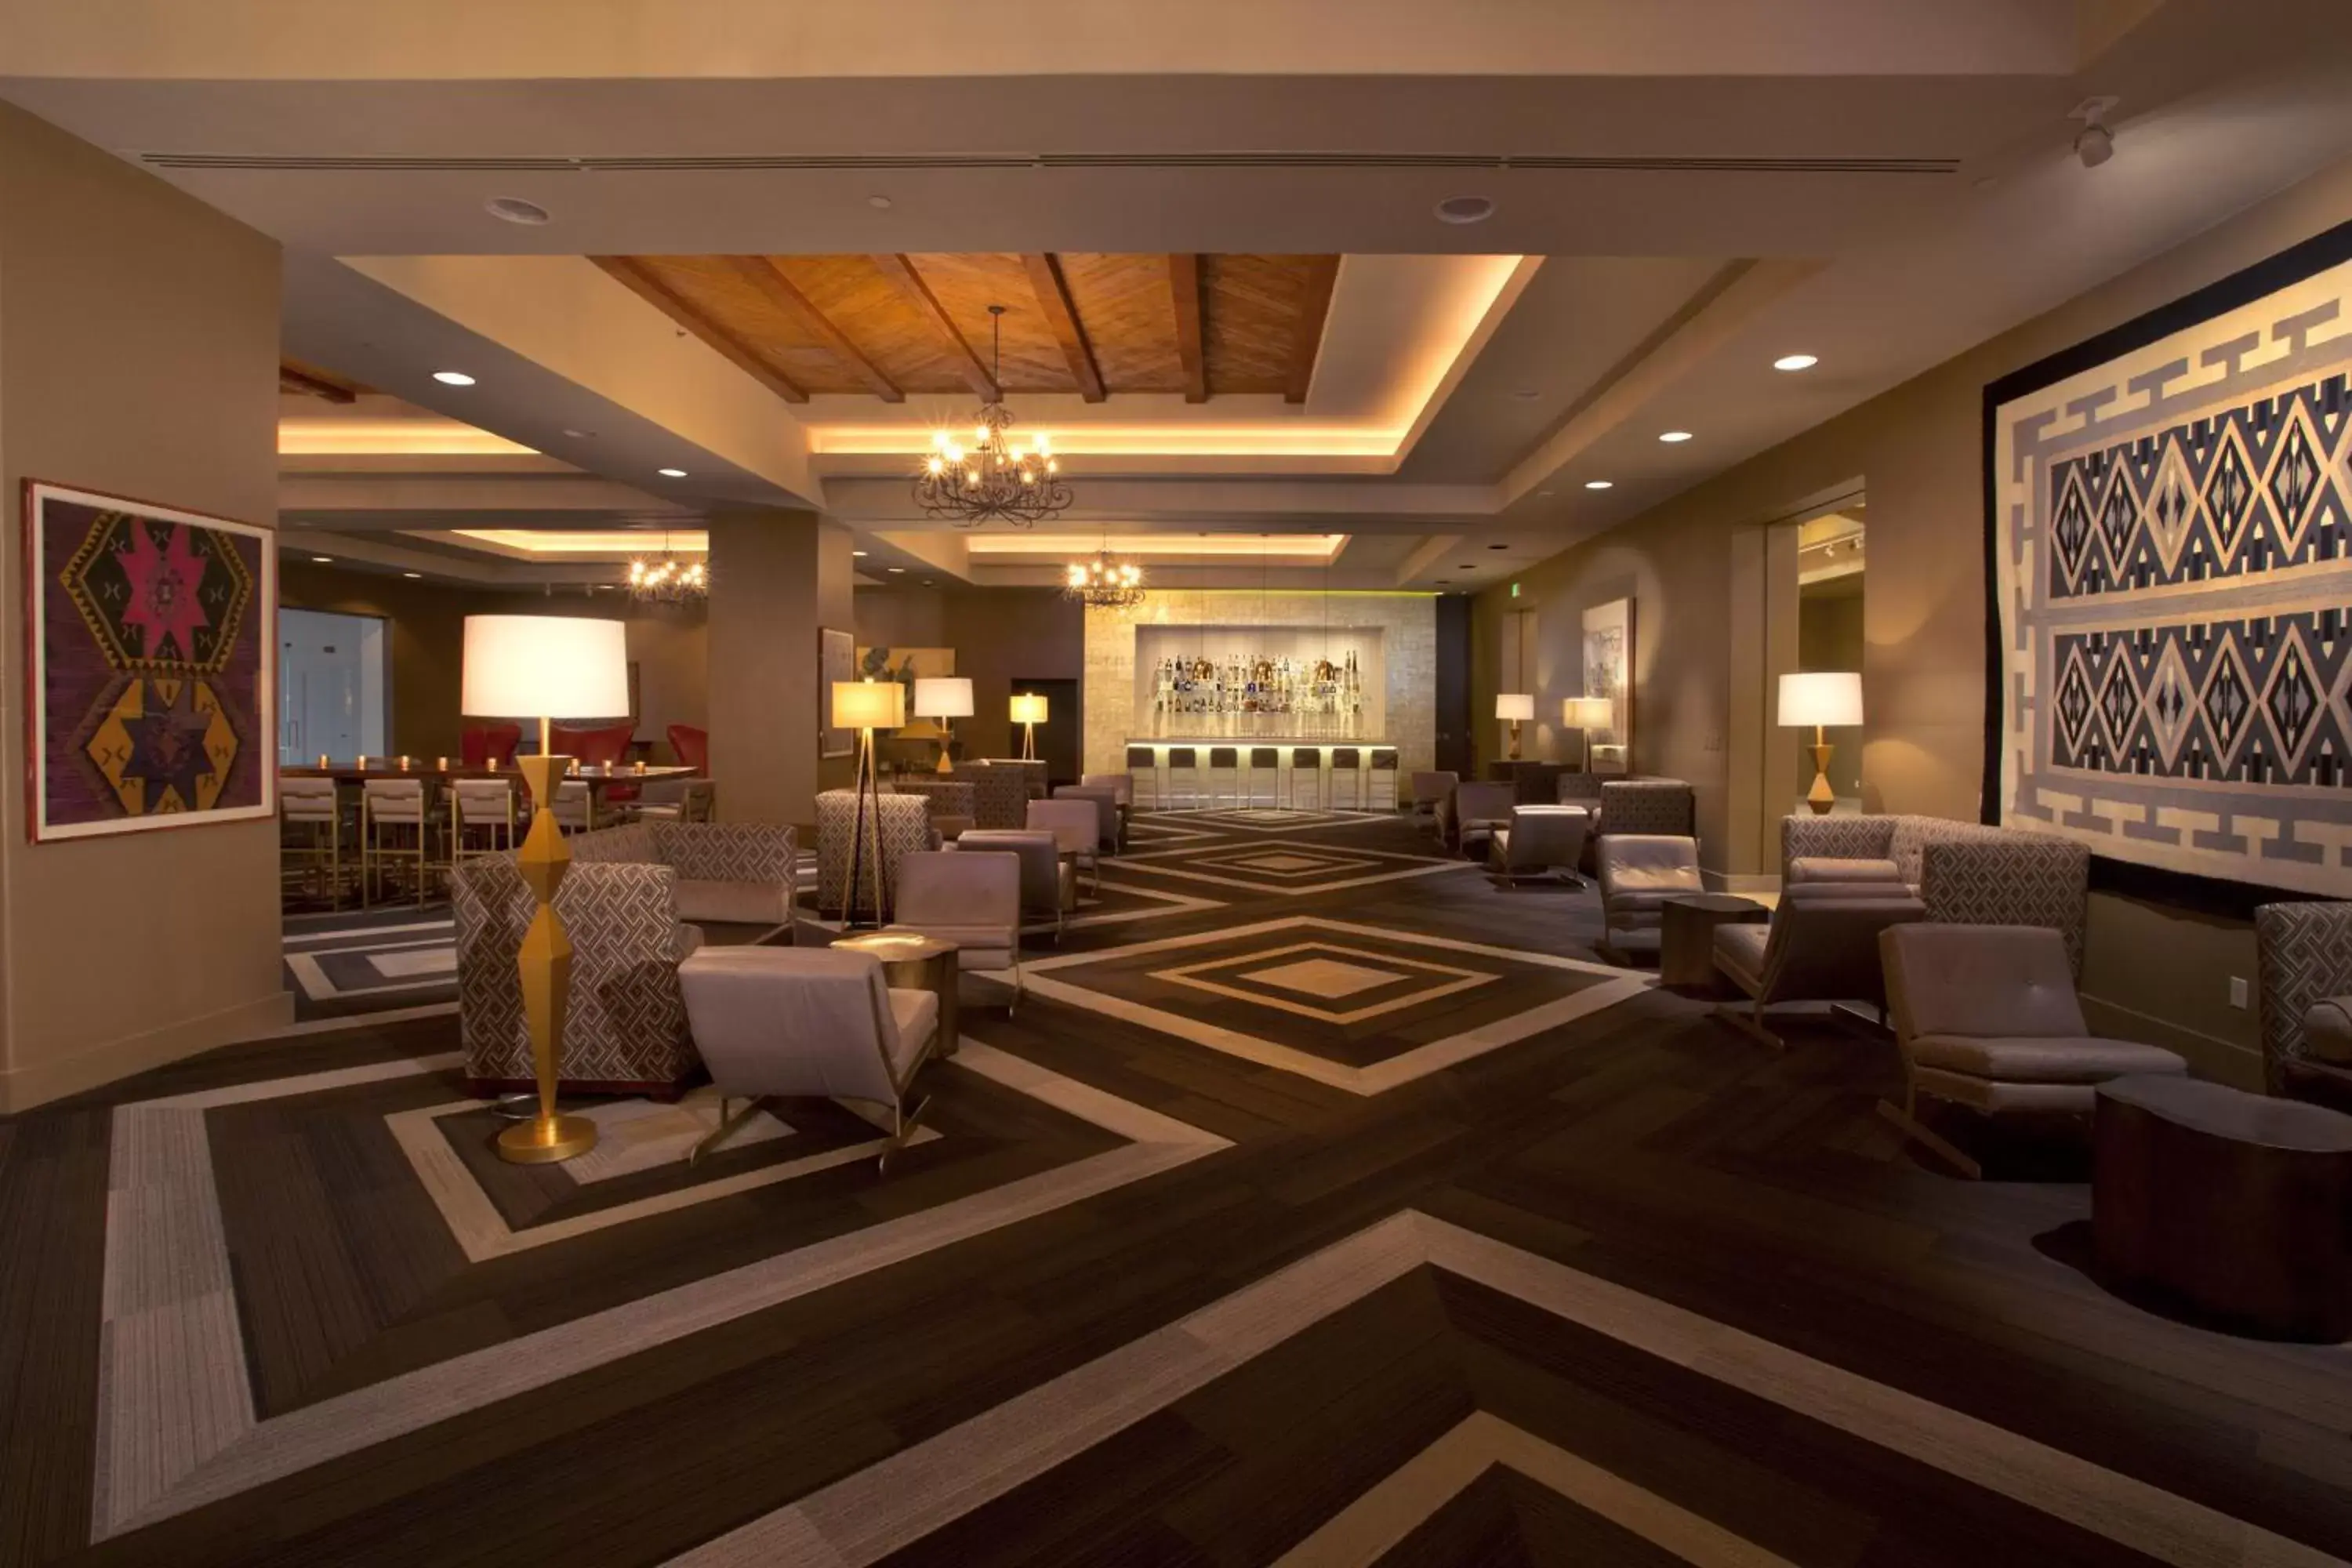 Lobby or reception in Eldorado Hotel and Spa